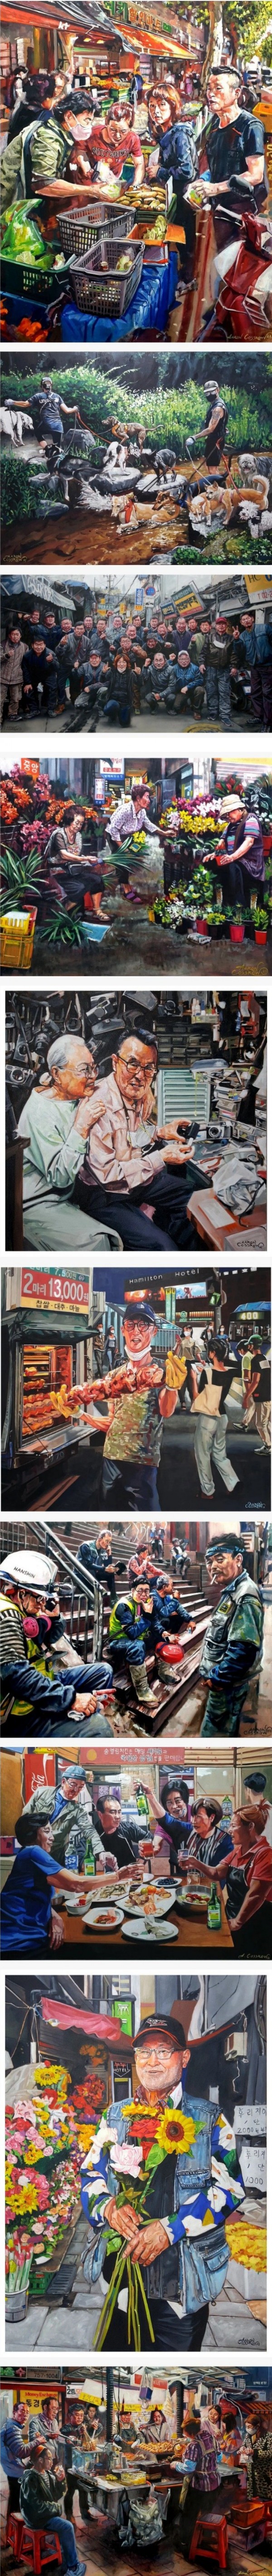 미국 화가가 그린 서울 길거리 사람들의 모습